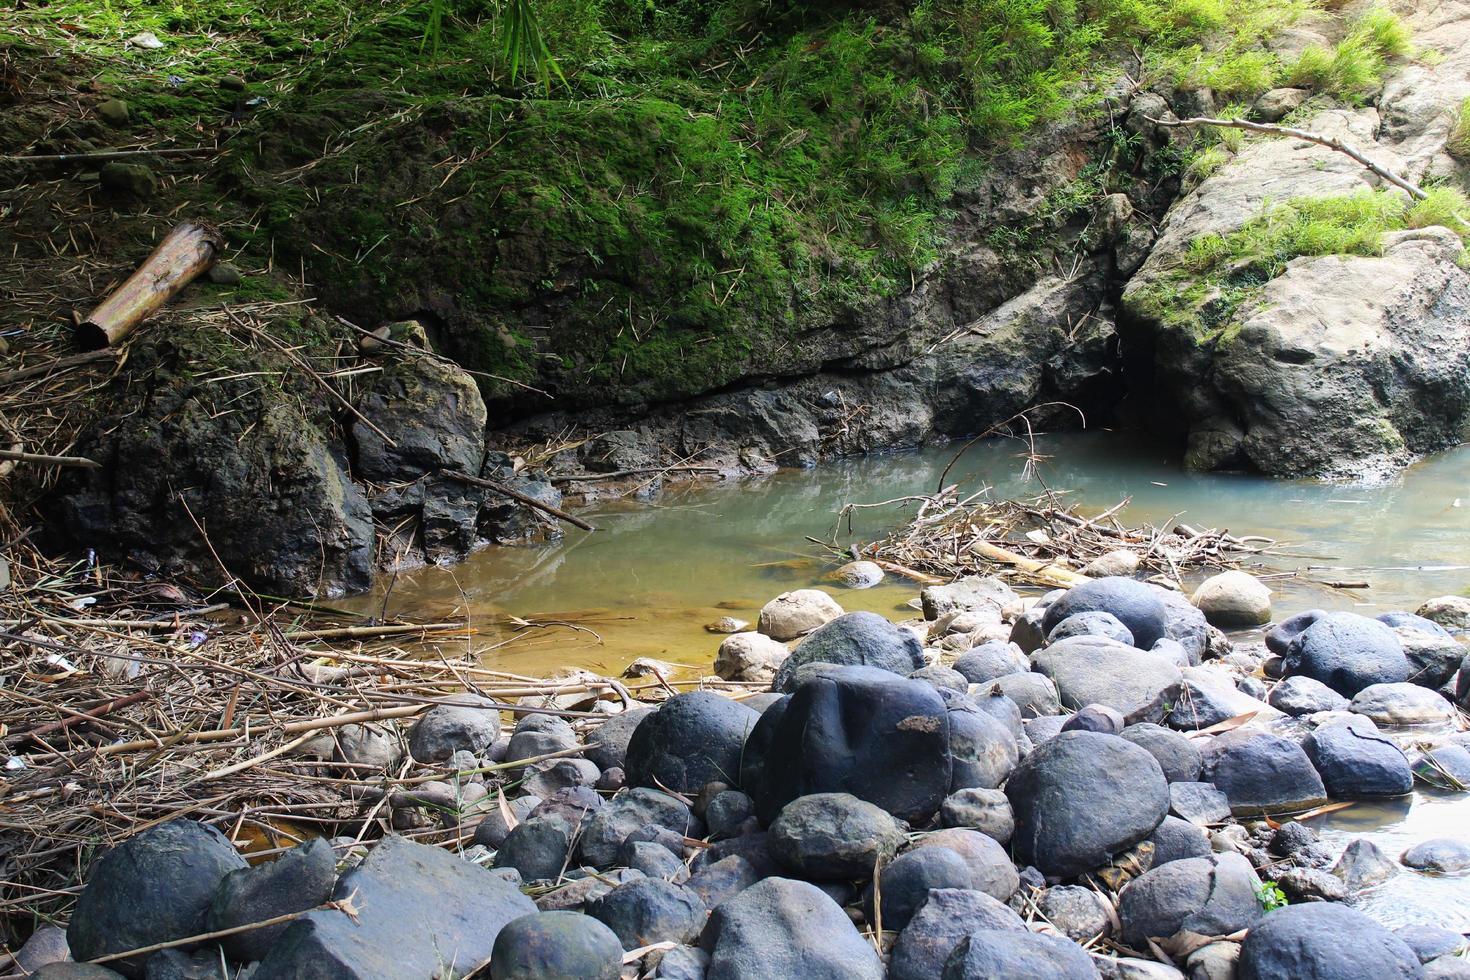 muchas piedras negras, piedras cubiertas de musgo y charcos de agua en la orilla del río foto